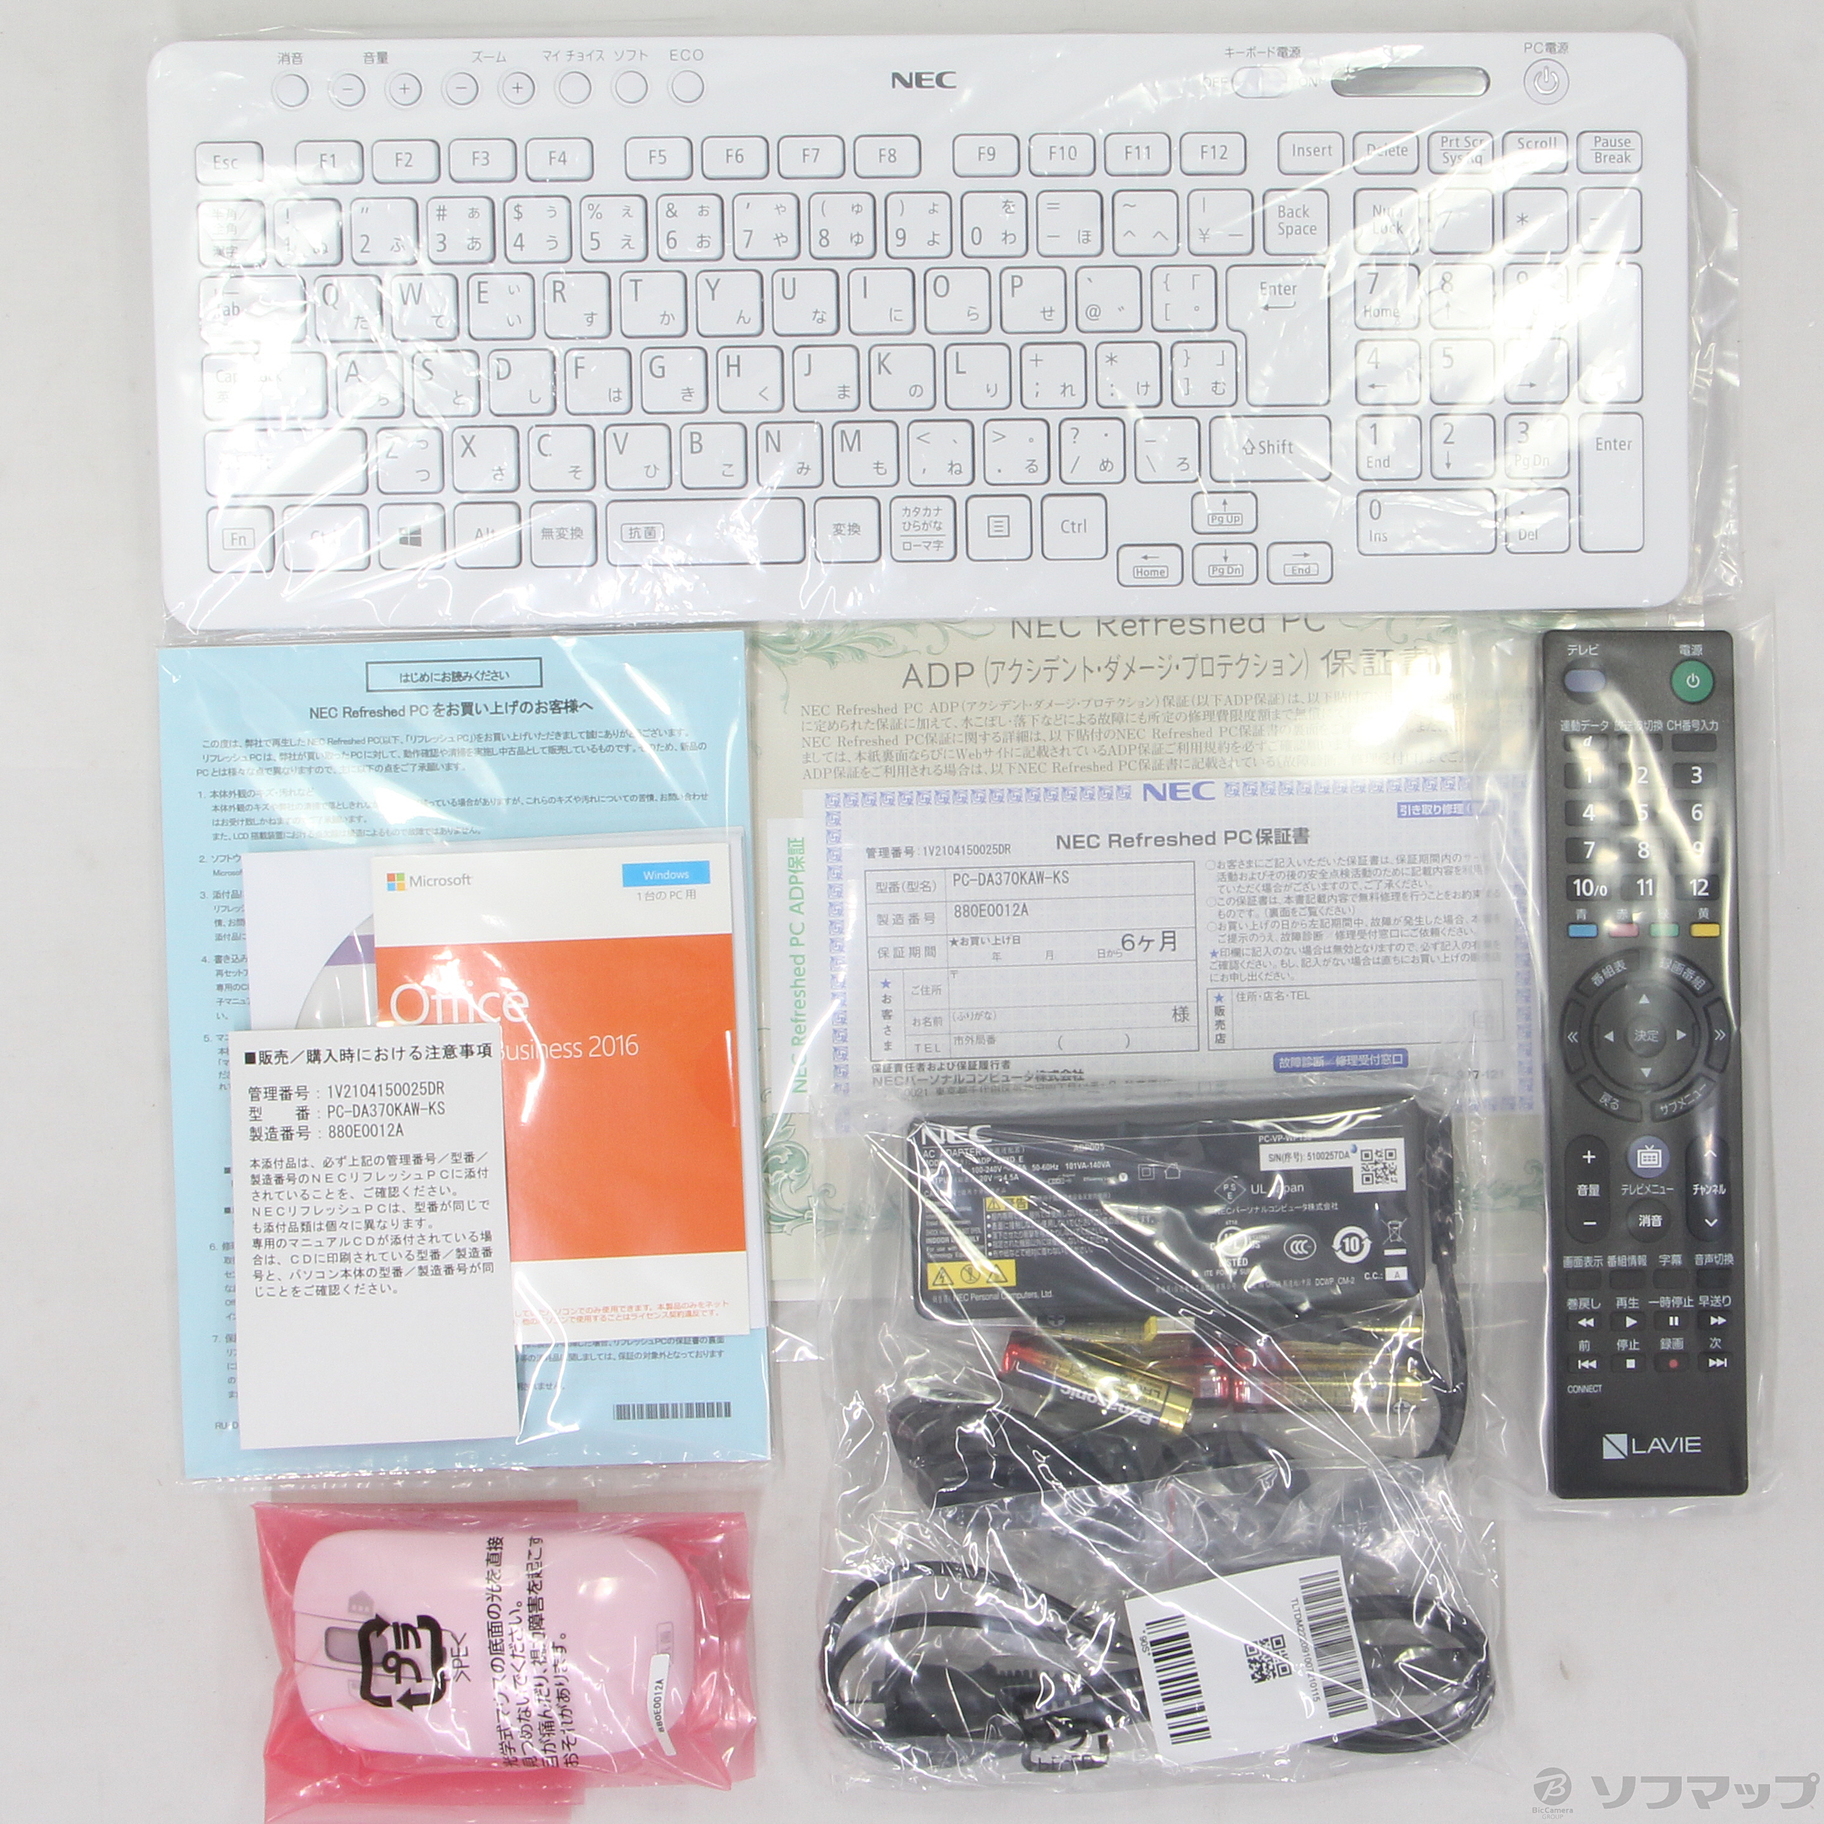 中古】LAVIE Desk All-in-one PC-DA370KAW-KS 〔NEC Refreshed PC